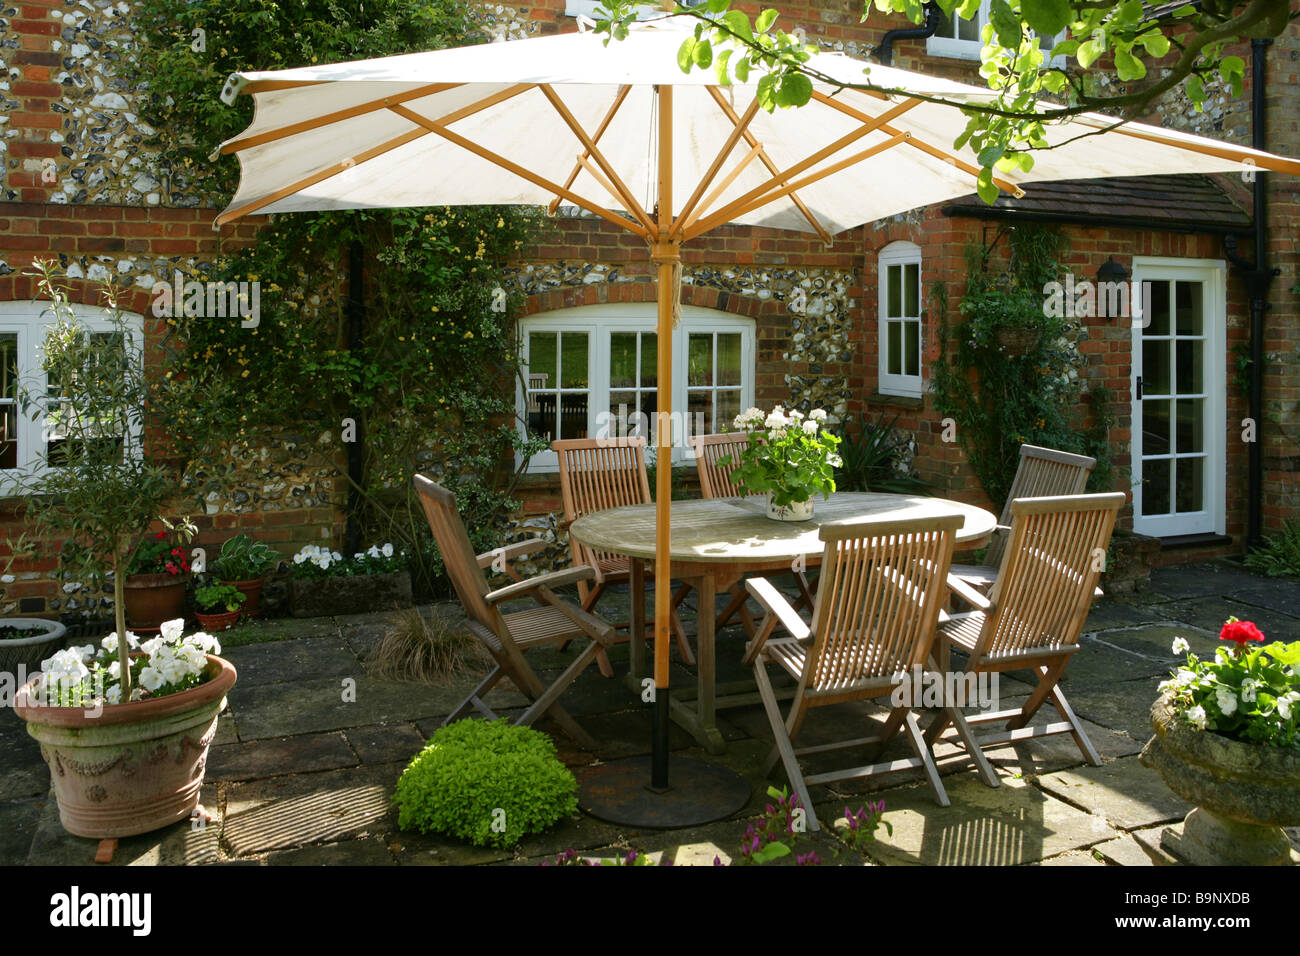 Eine inländische Land-Sommer-Szene. Das Foto zeigt eine Terrasse von einem englischen Landhaus mit einem Speisen unter freiem Himmel Set. Stockfoto